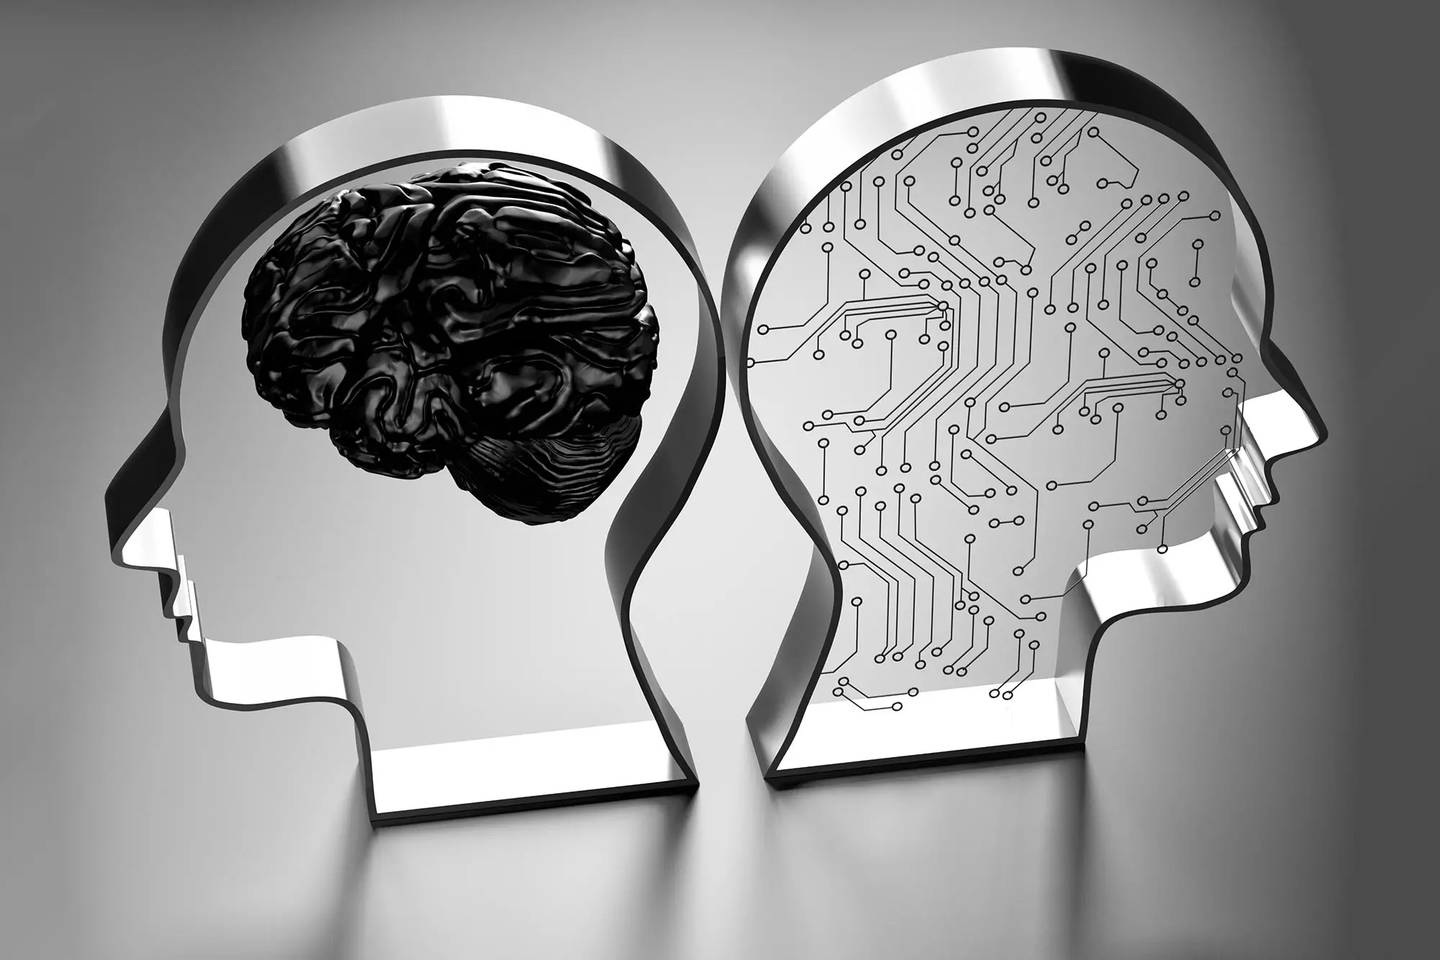 Un proyecto de investigación científica de Microsoft analiza las cualidades de GPT-4 y ChatGPT concluyendo que la Inteligencia Artificial es casi humana.